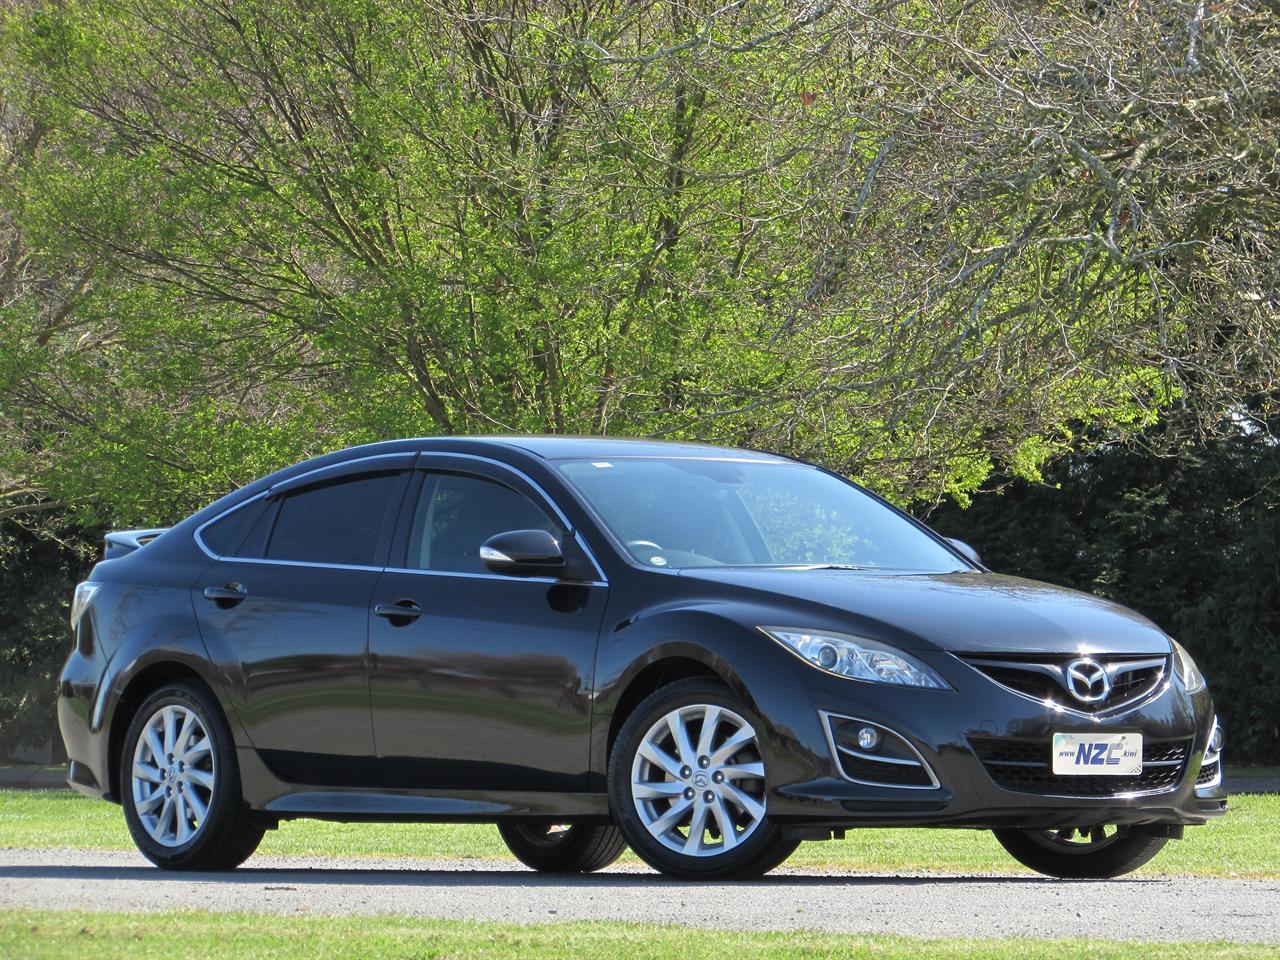 NZC best hot price for 2012 Mazda ATENZA in Christchurch